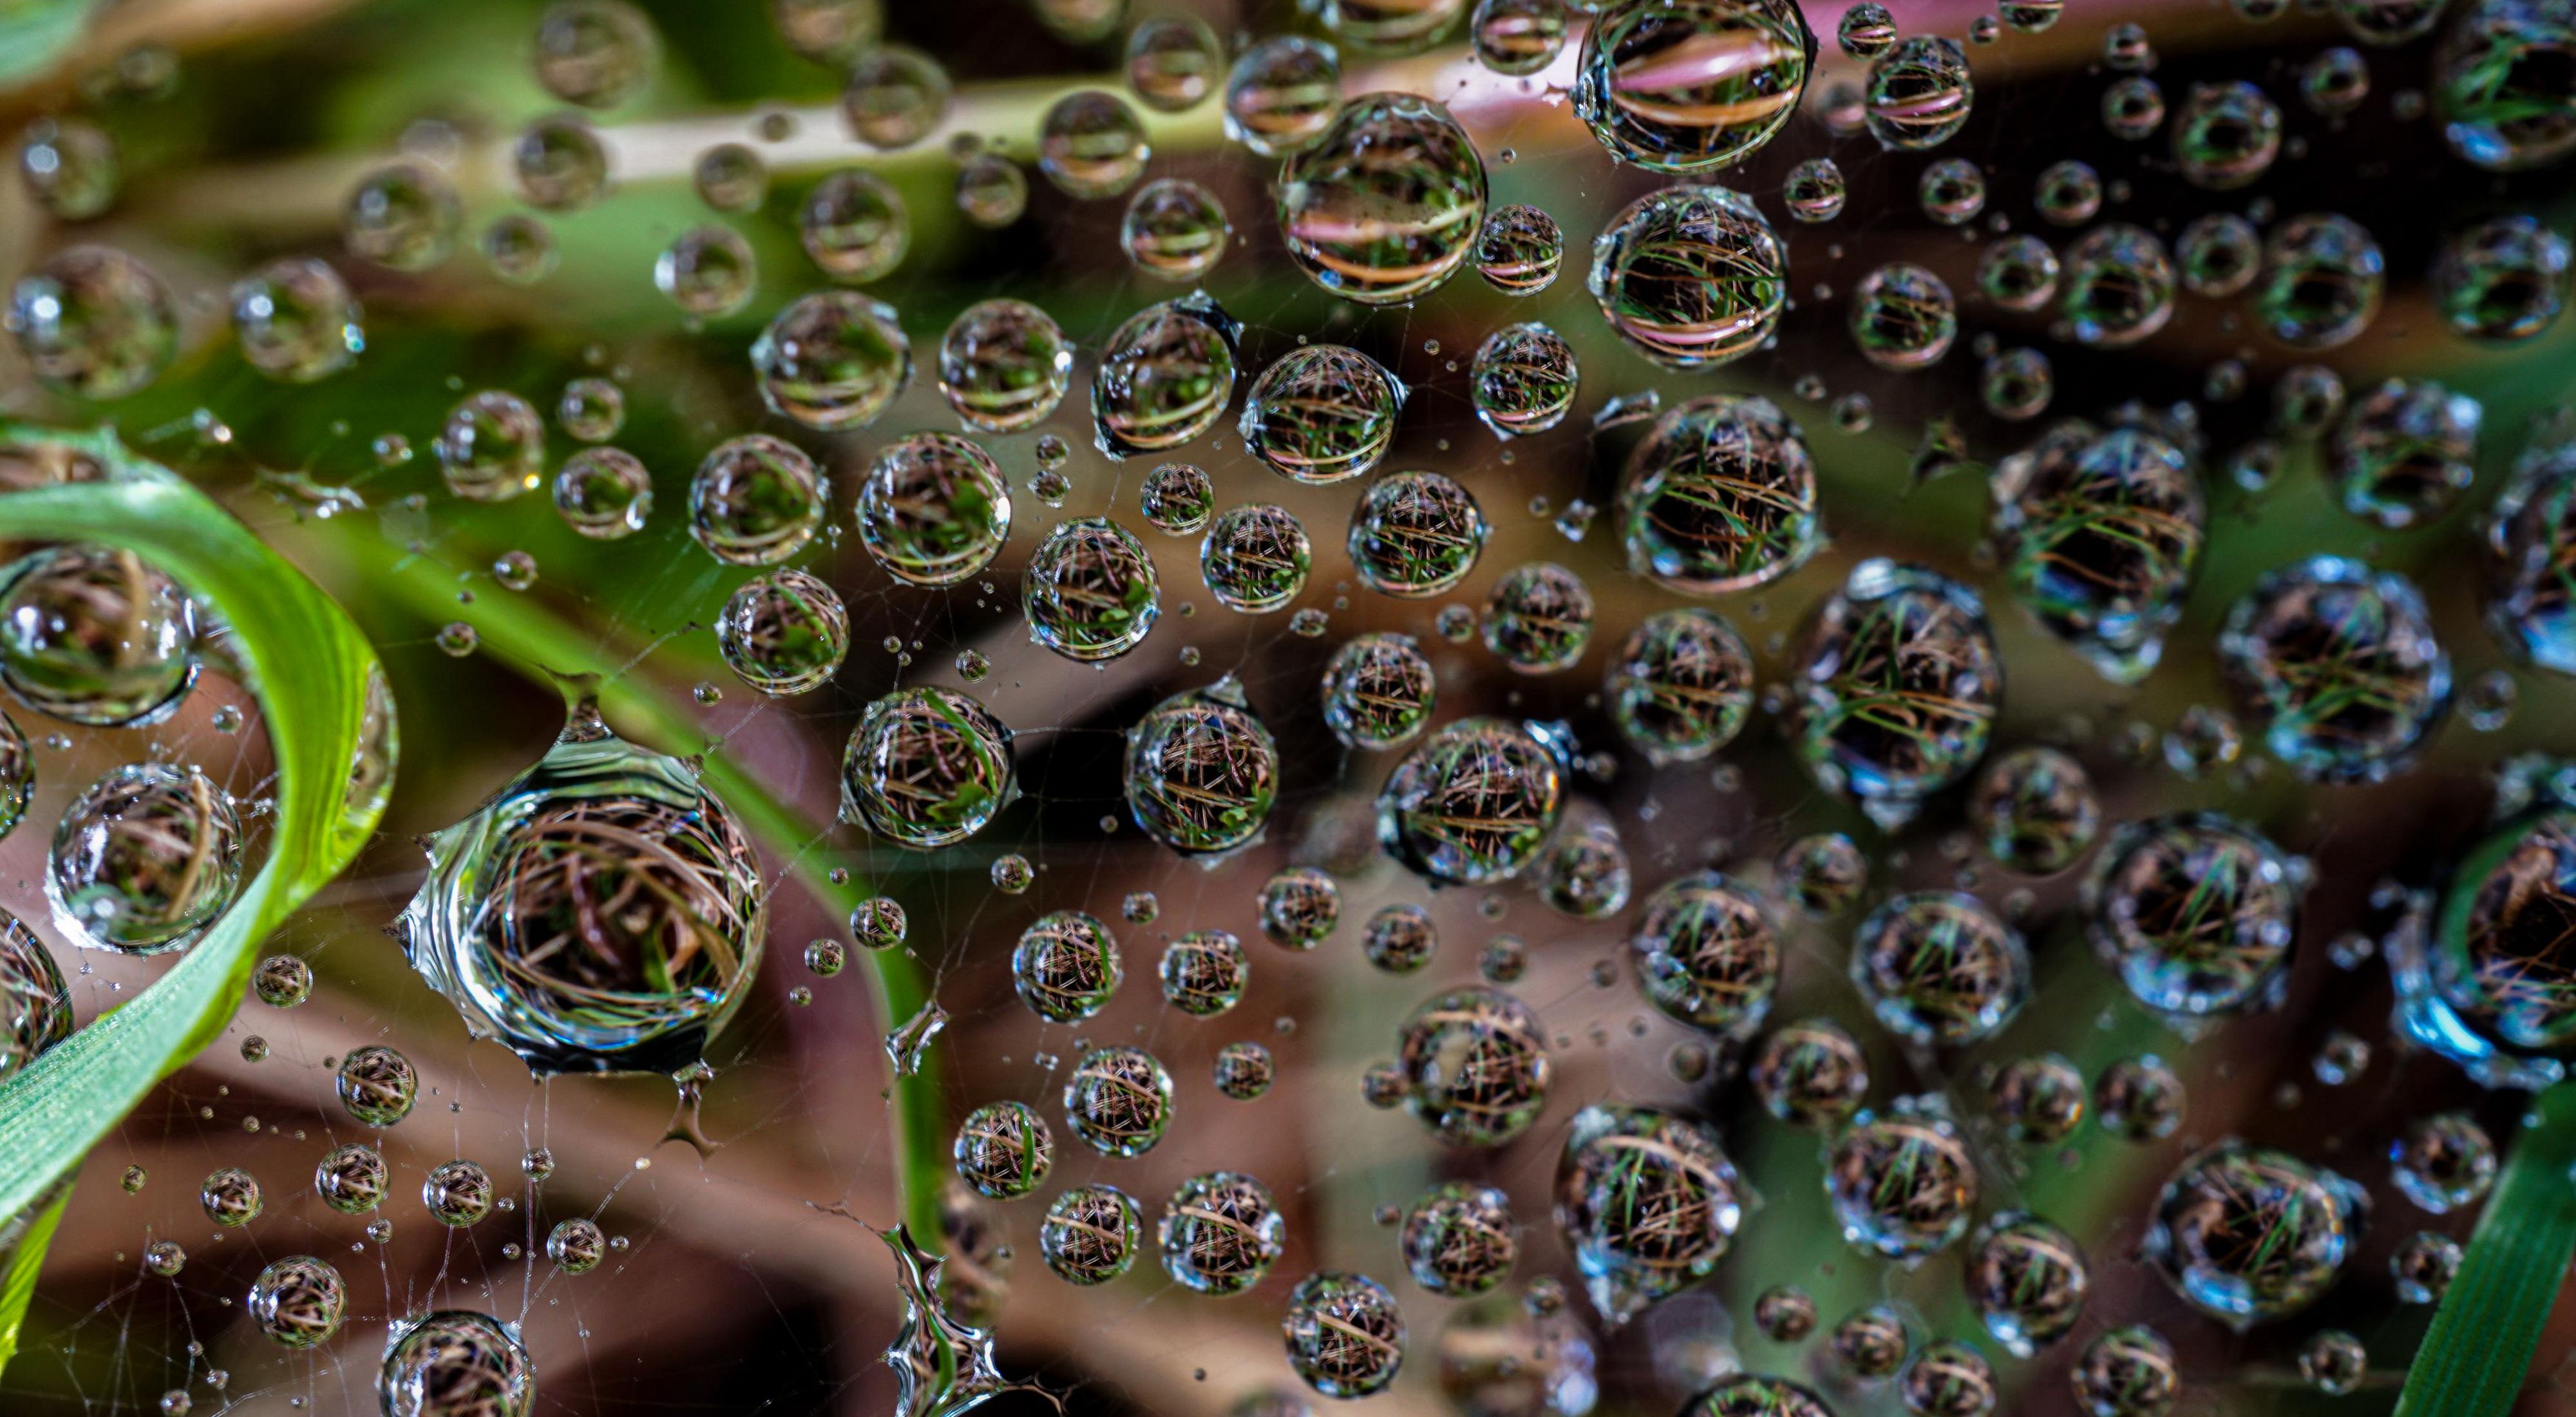 Primer plano de montones de gotas minúsculas de agua en una tela de araña, todas ellas reflejando las hojas verdes y los tallos marrones de la planta en la que se encuentra la tela.